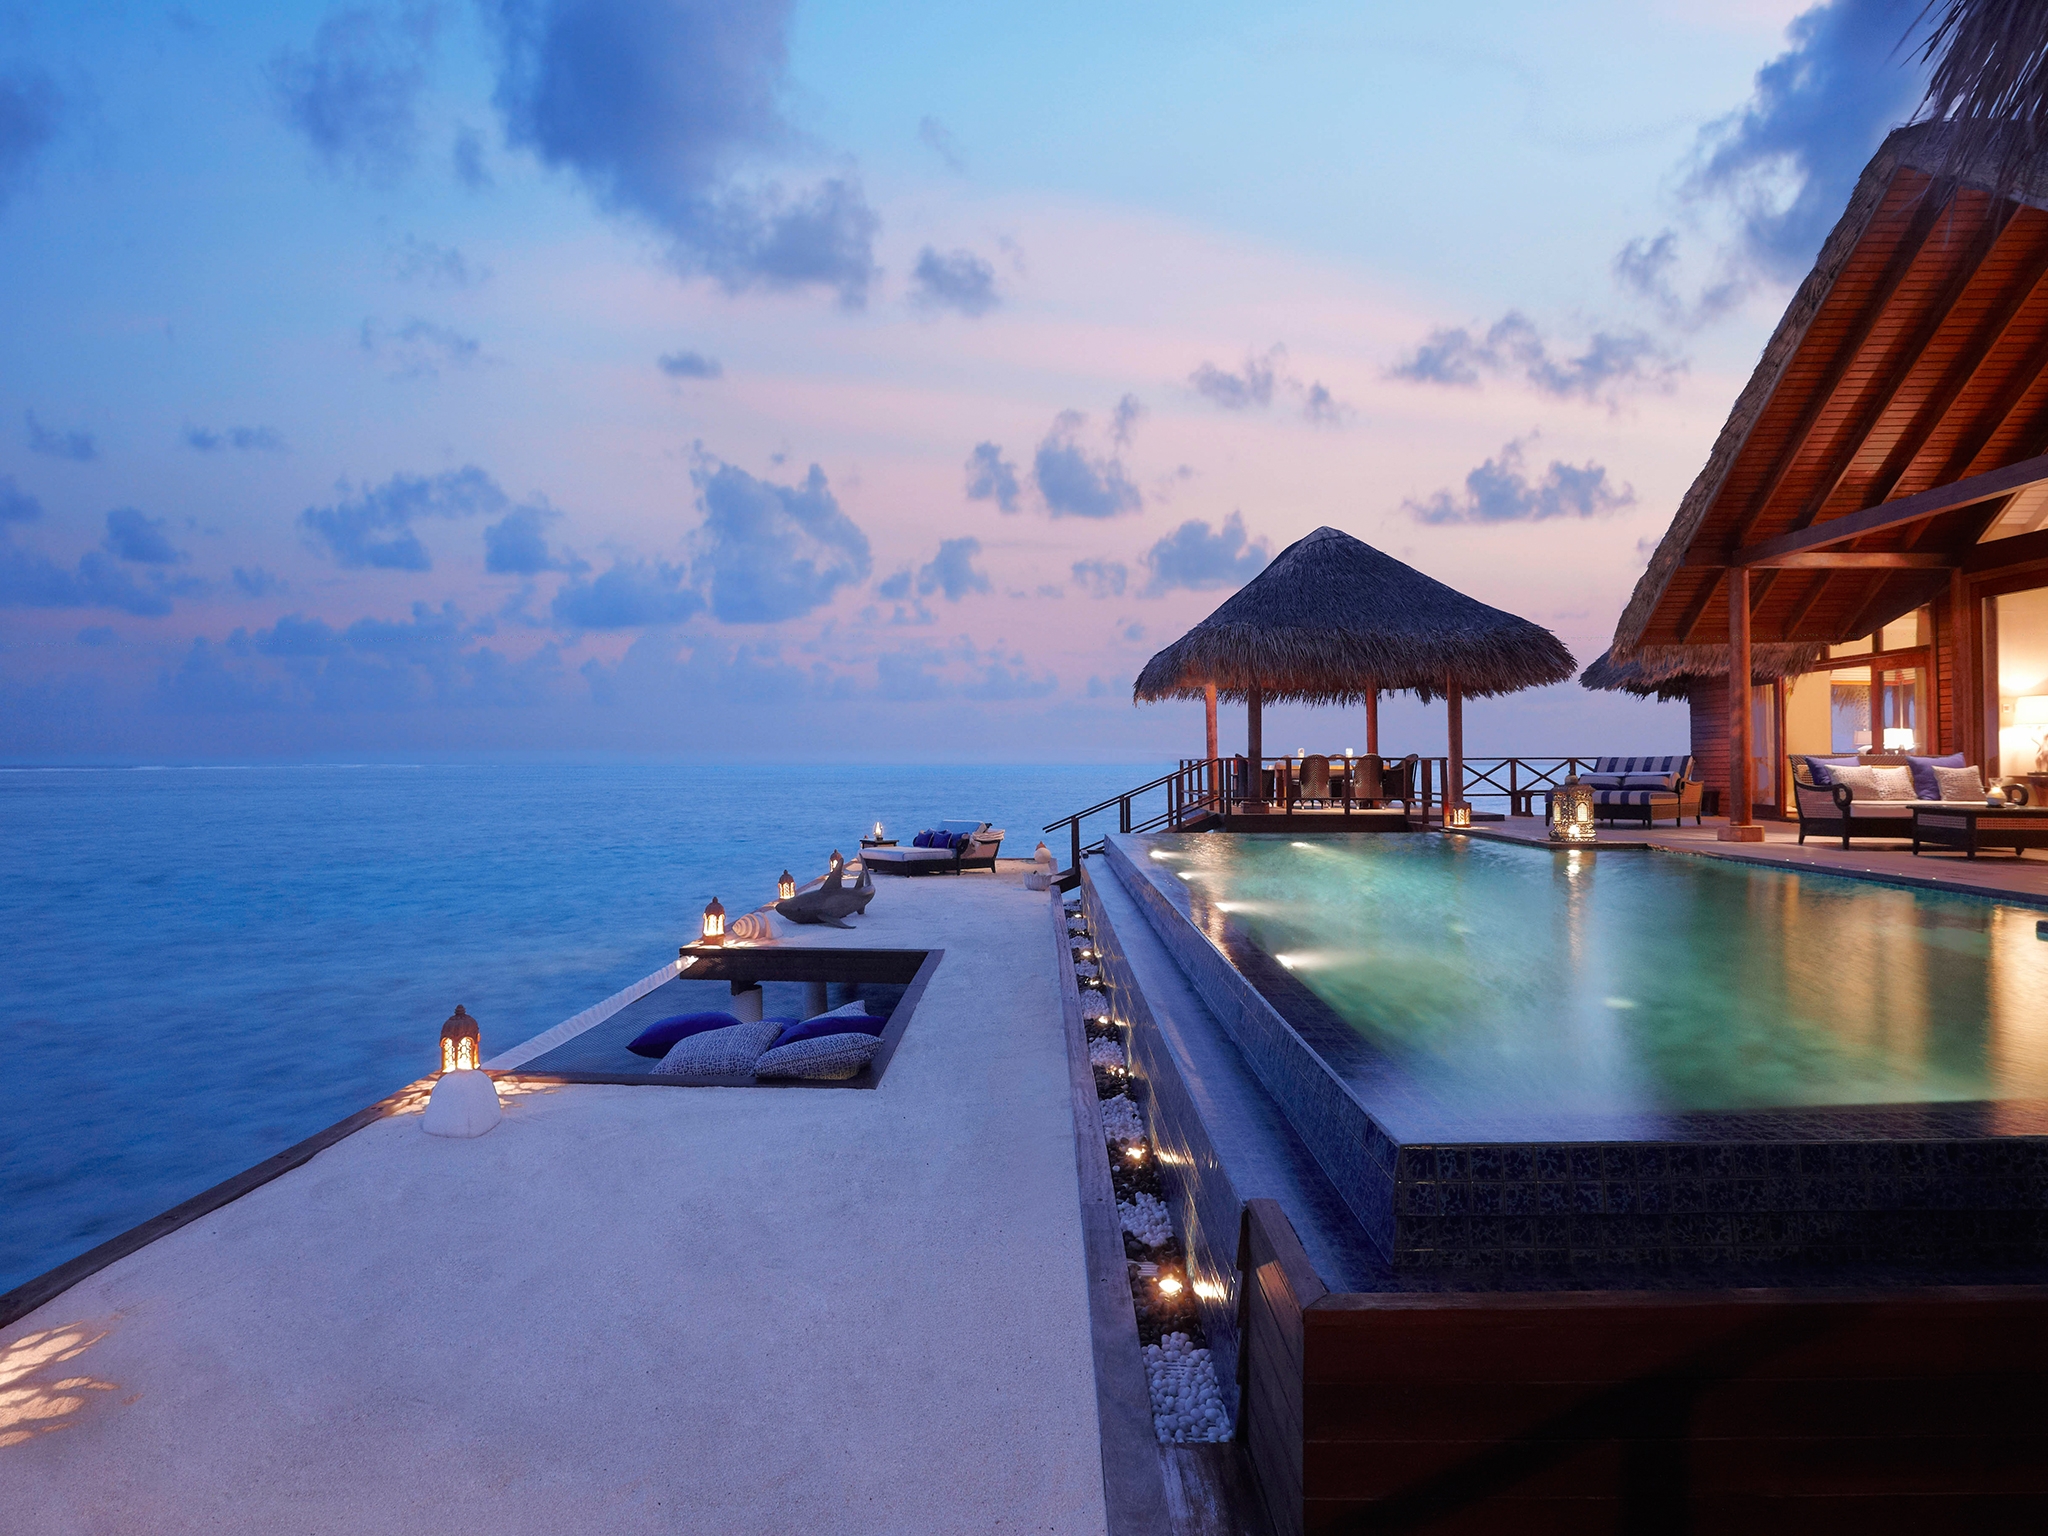 Красивые отели на море. Бунгало на Бали. Тадж экзотика Мальдивы. Гостиничный комплекс «цветок океана» (Ocean Flower), Мальдивы. Мальдивы Резорт лакшери.